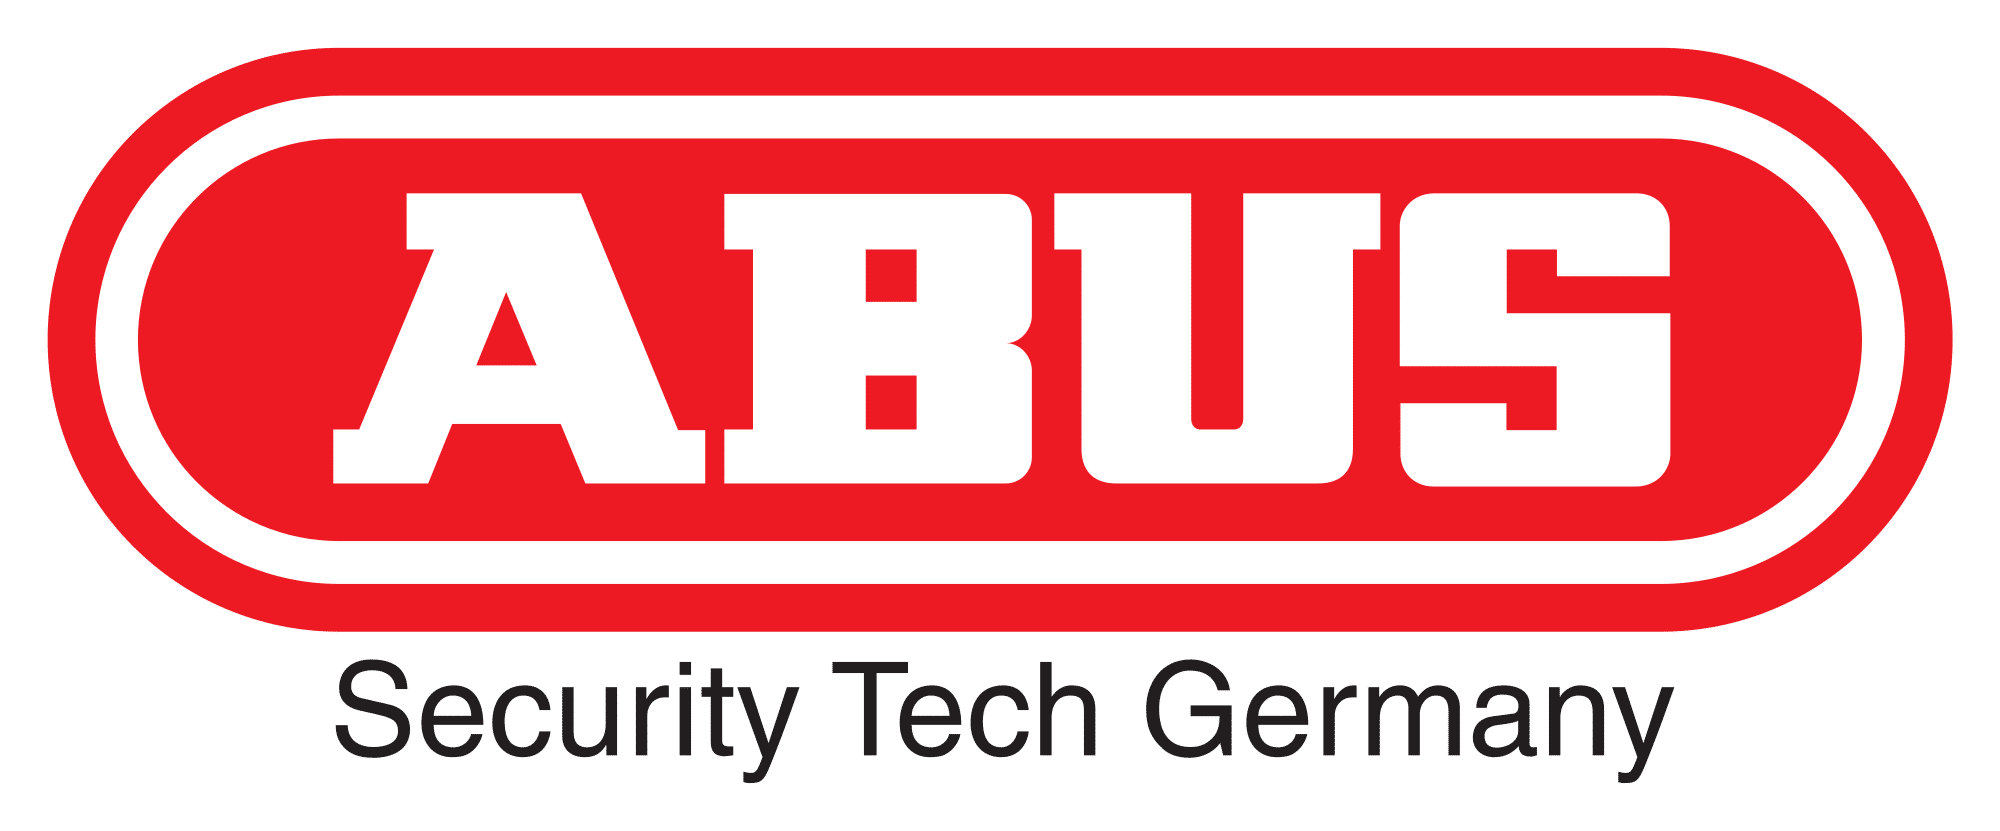 ABUS_Logo